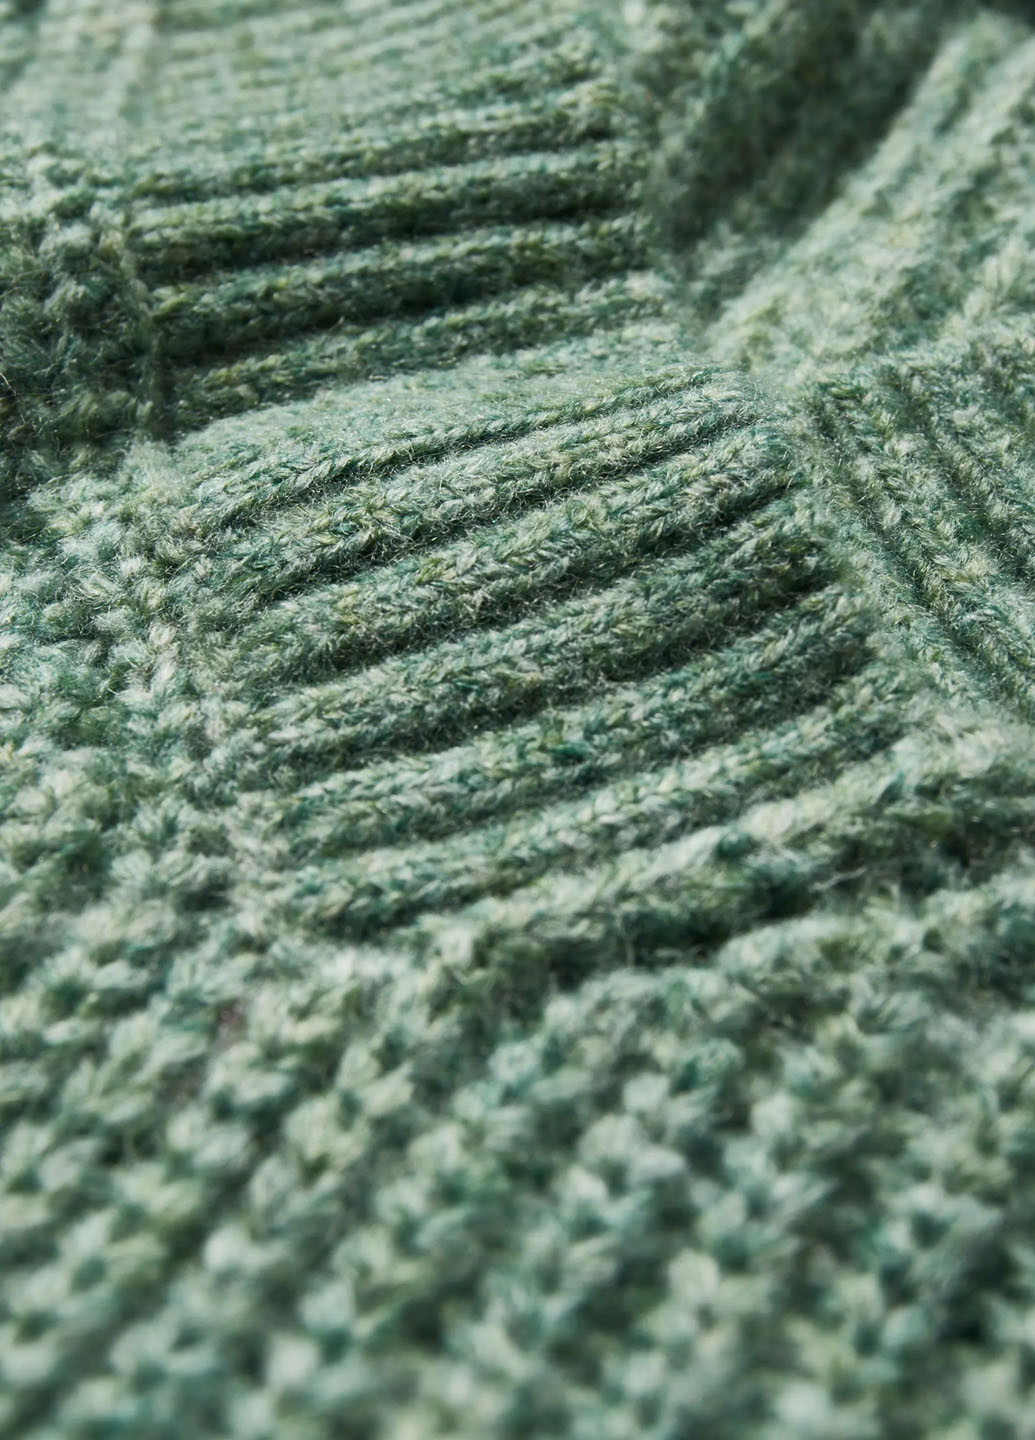 Сіро-зелений демісезонний пуловер пуловер C&A